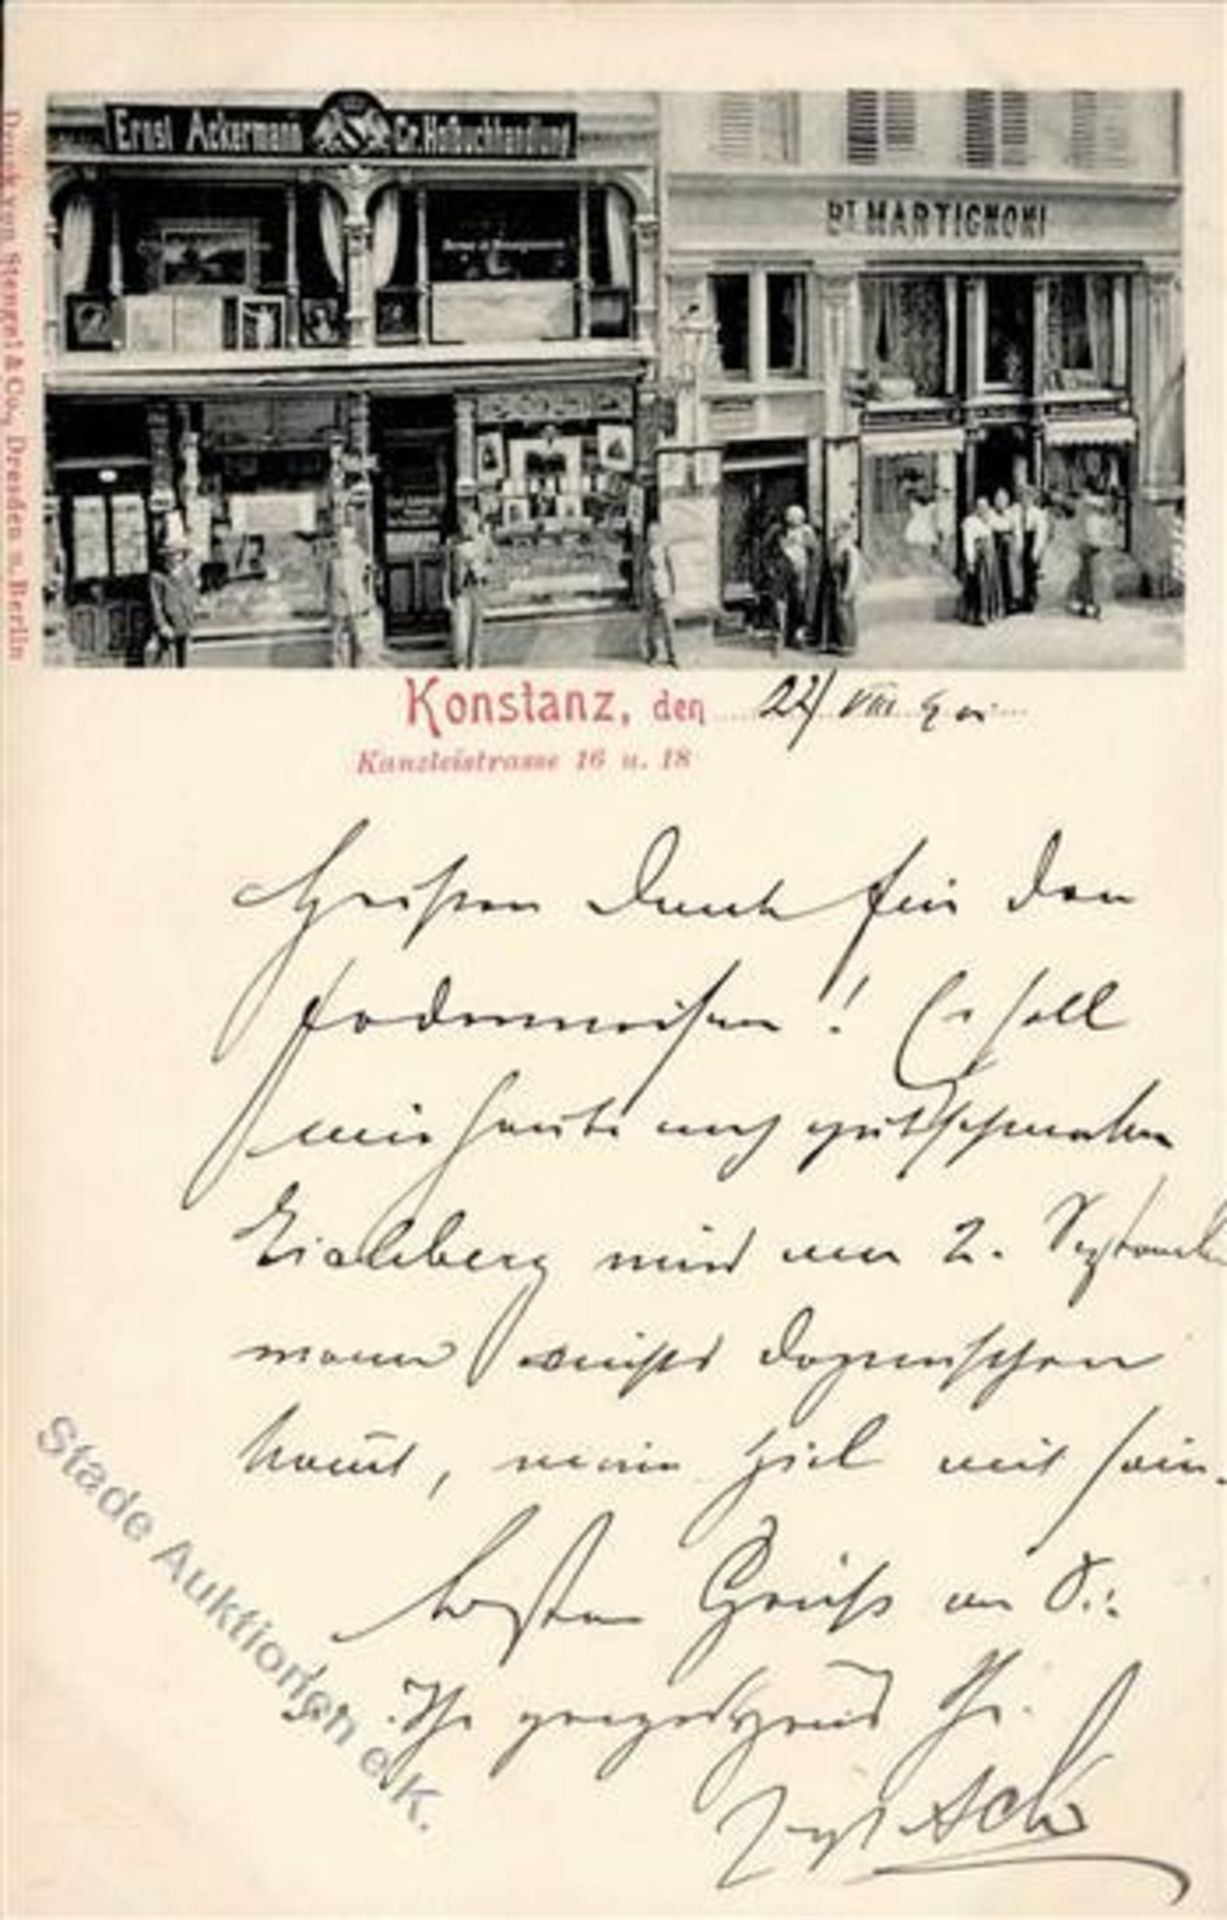 Konstanz (7750) Buchandlung Ernst Ackermann Handlung Martingnoni Kanzleistraße 16 und 18 1901 I-